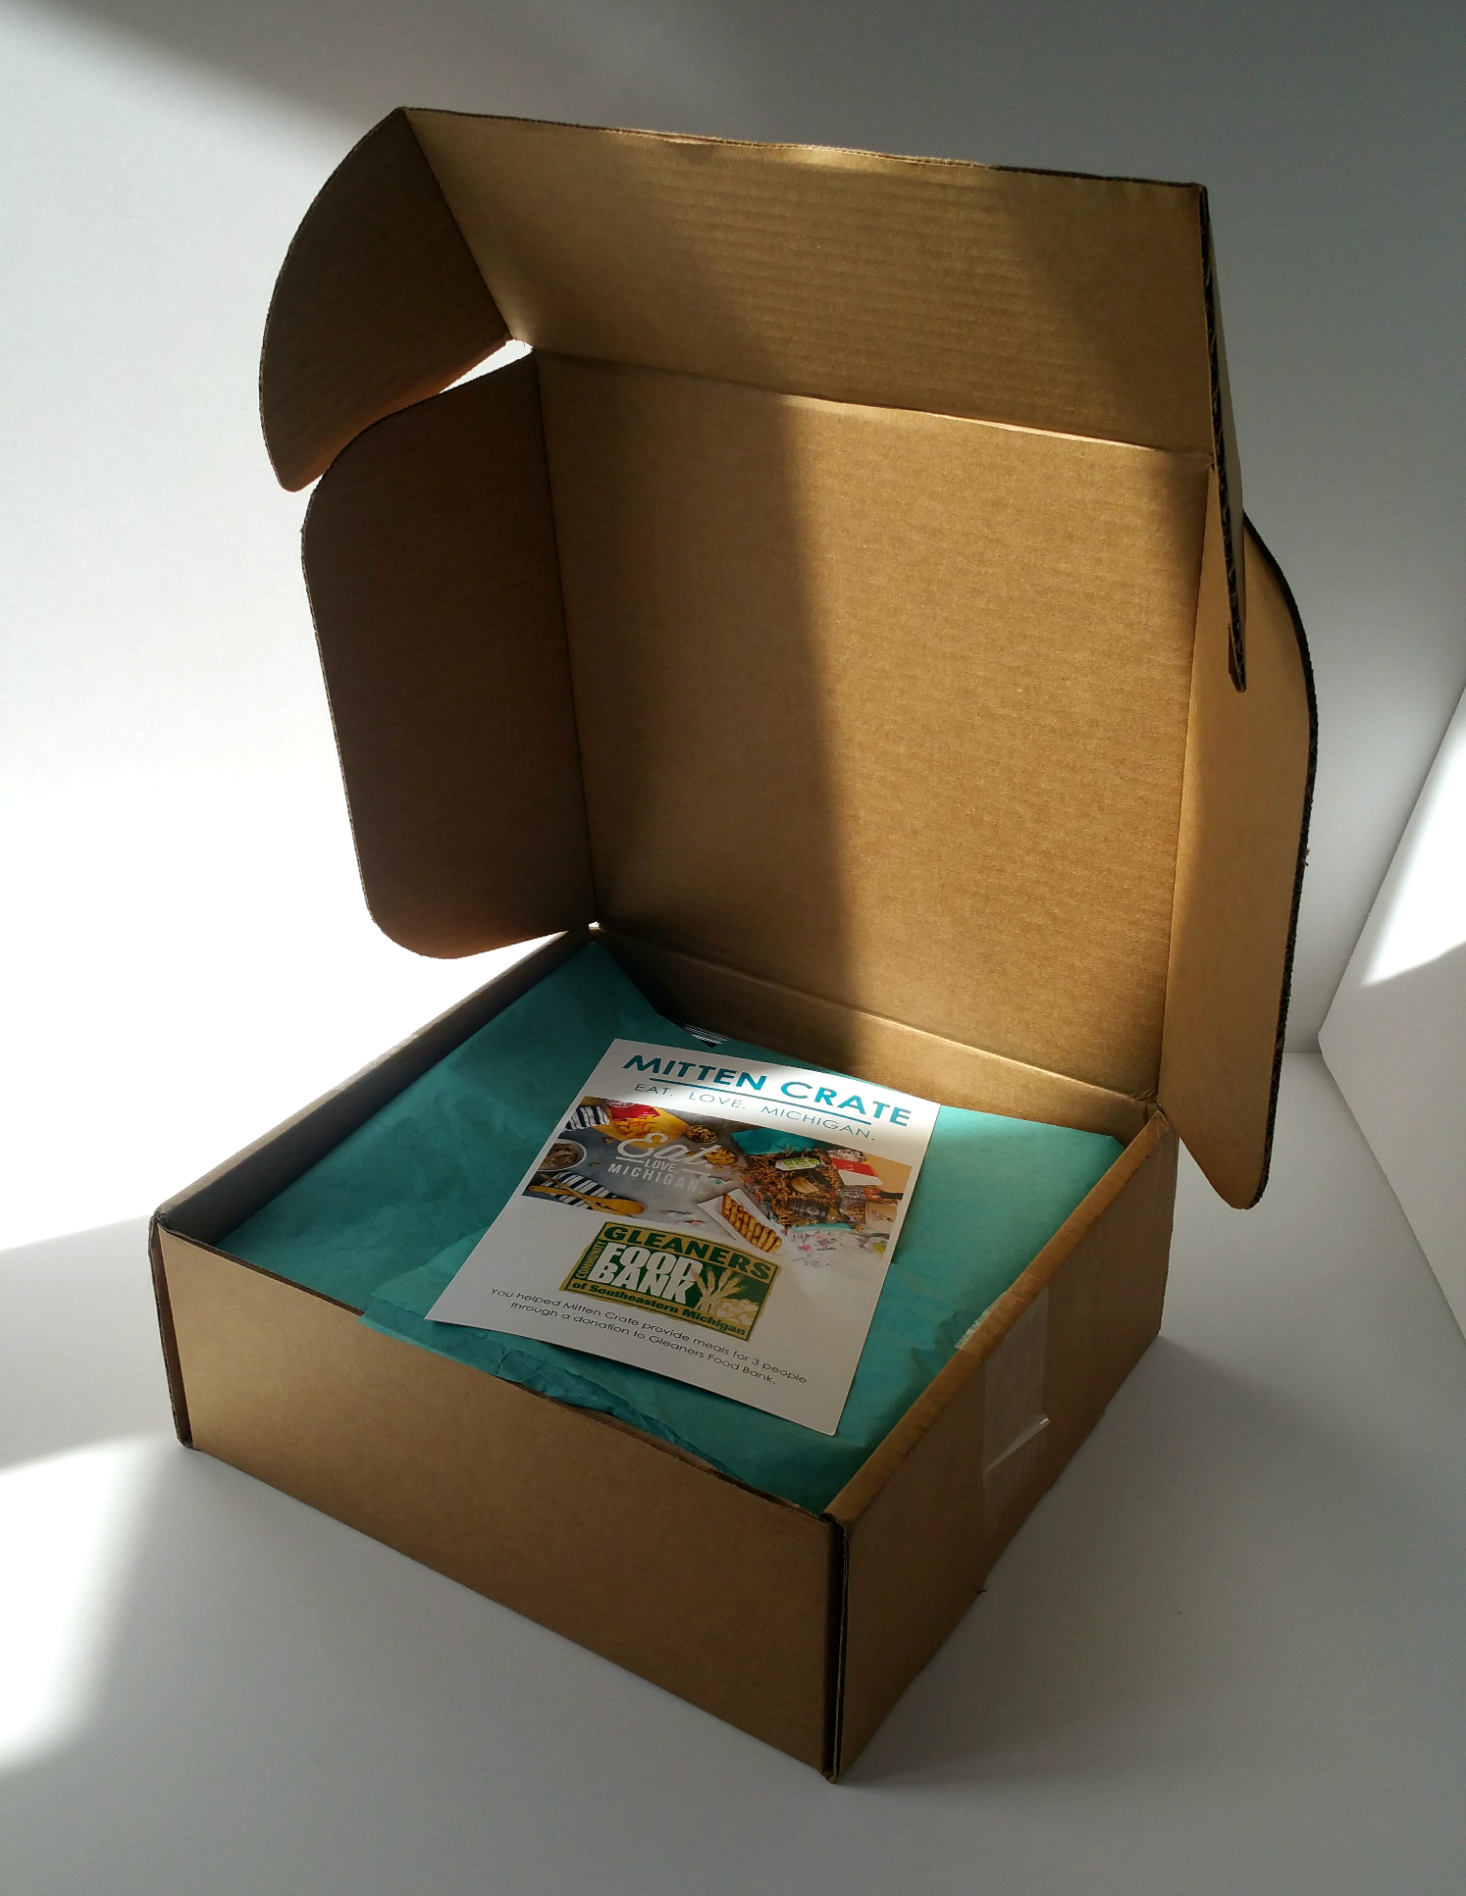 mitten-crate-september-2016-packaging